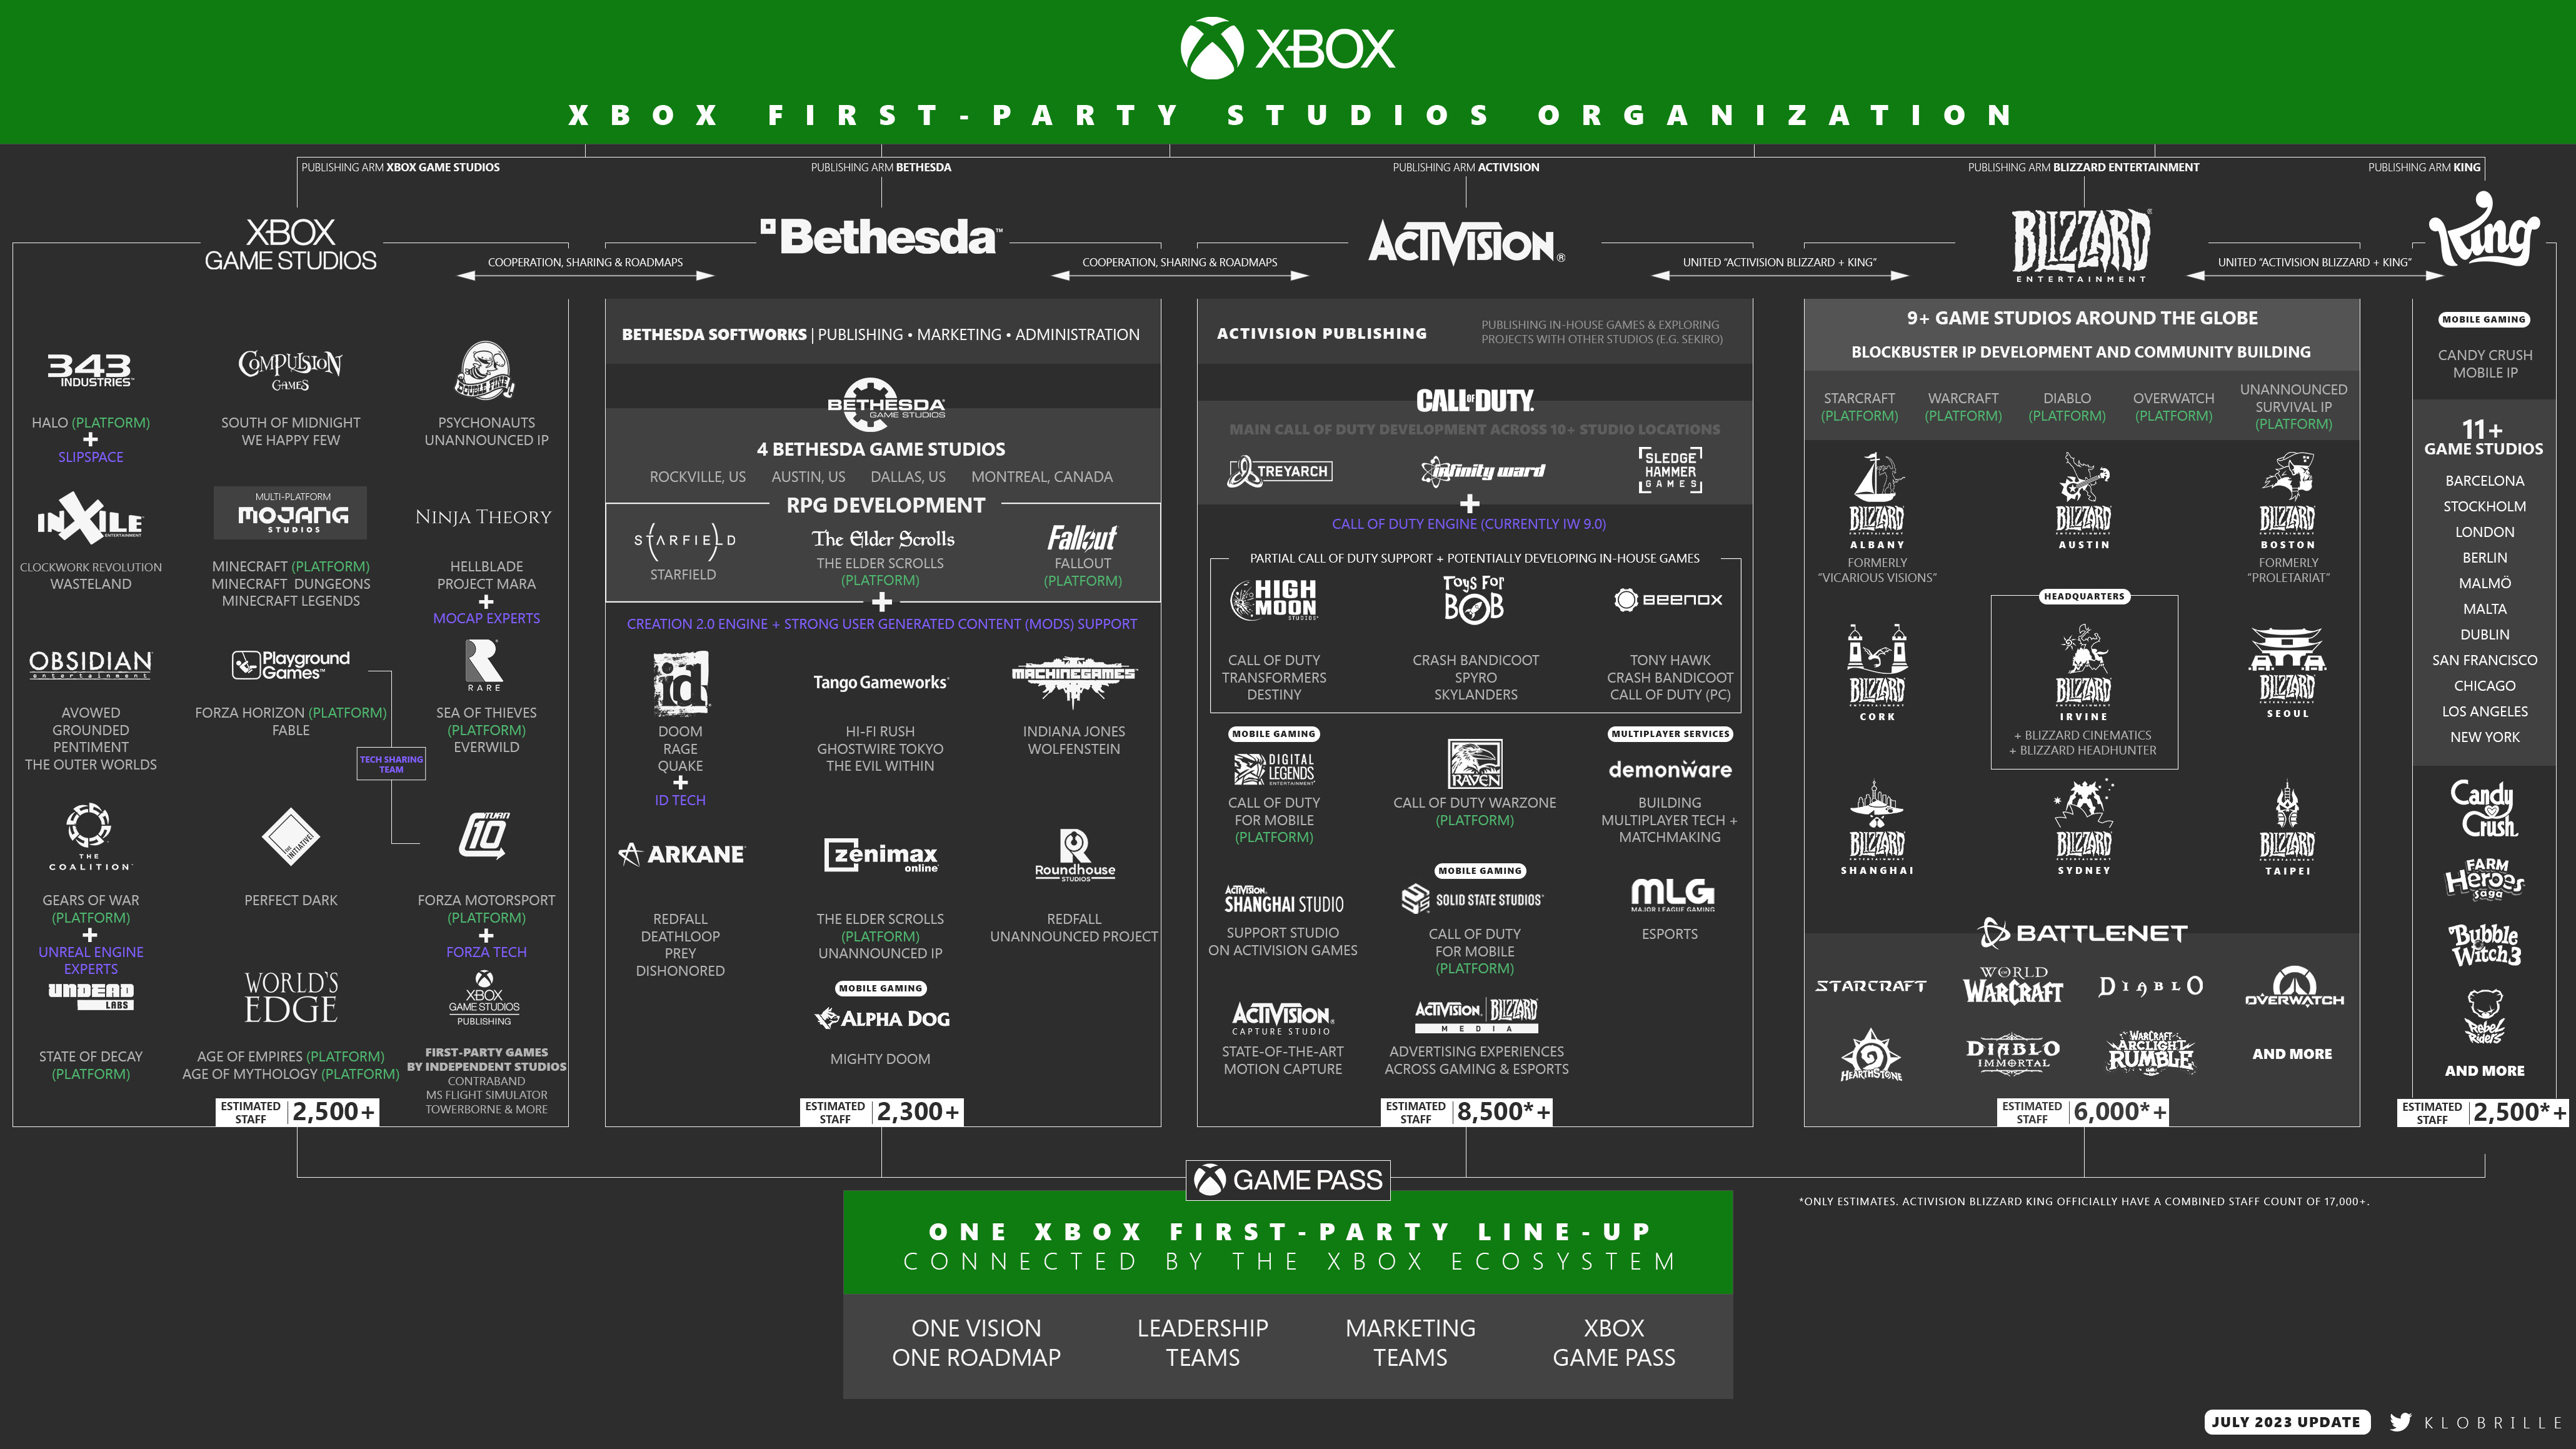 Overwatch, Diablo e Call of Duty estão a caminho do Xbox Game Pass